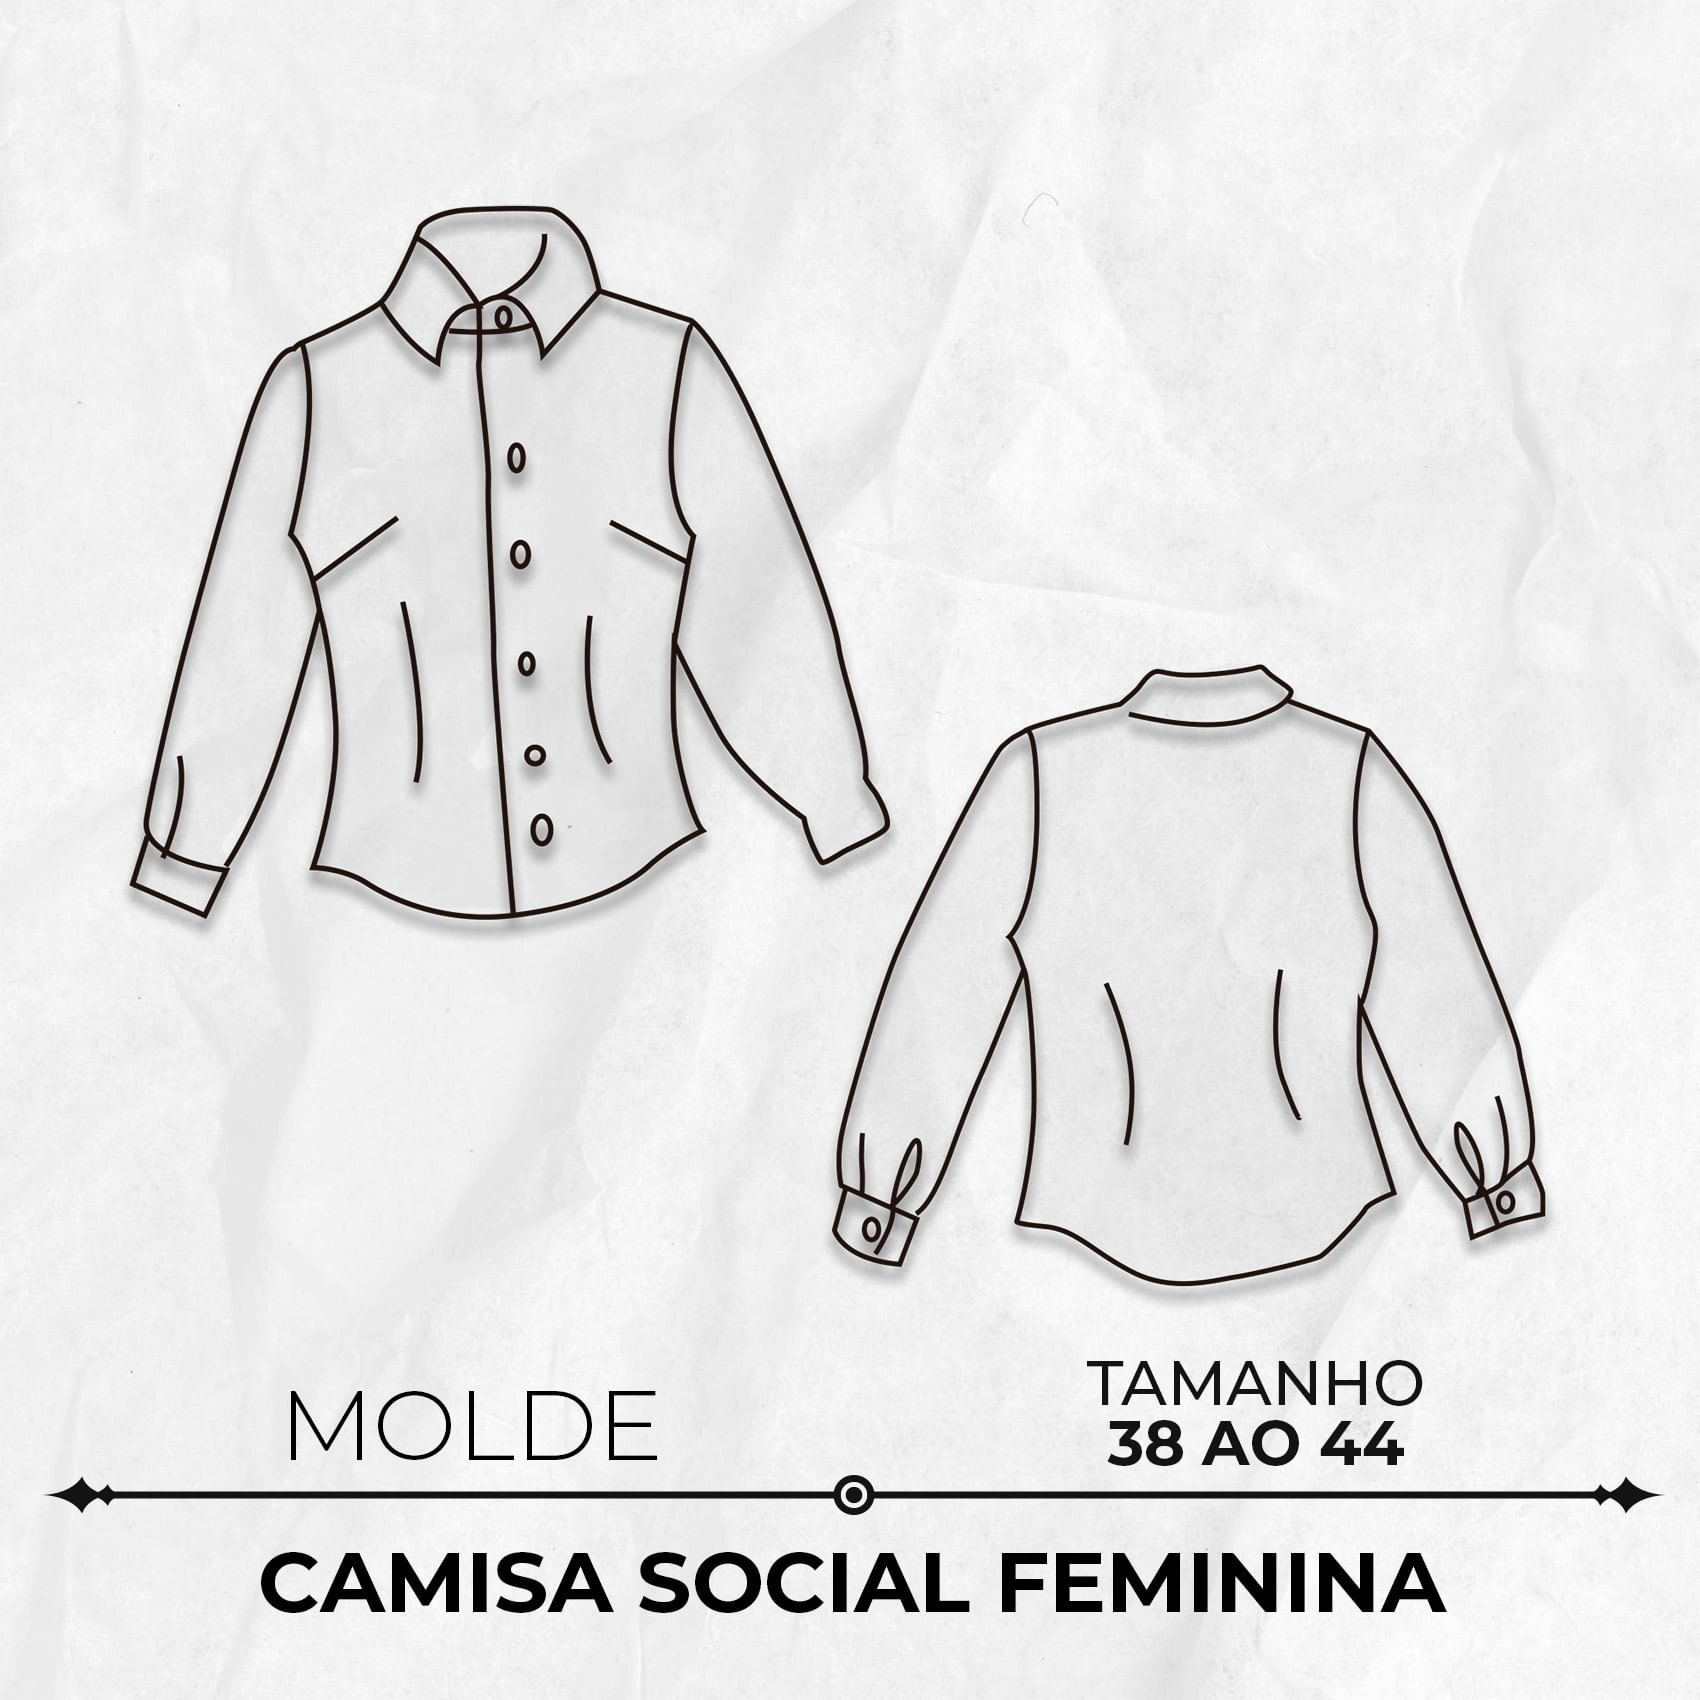 Molde camisa social feminina tamanho 38 ao 44 by Marlene Mukai